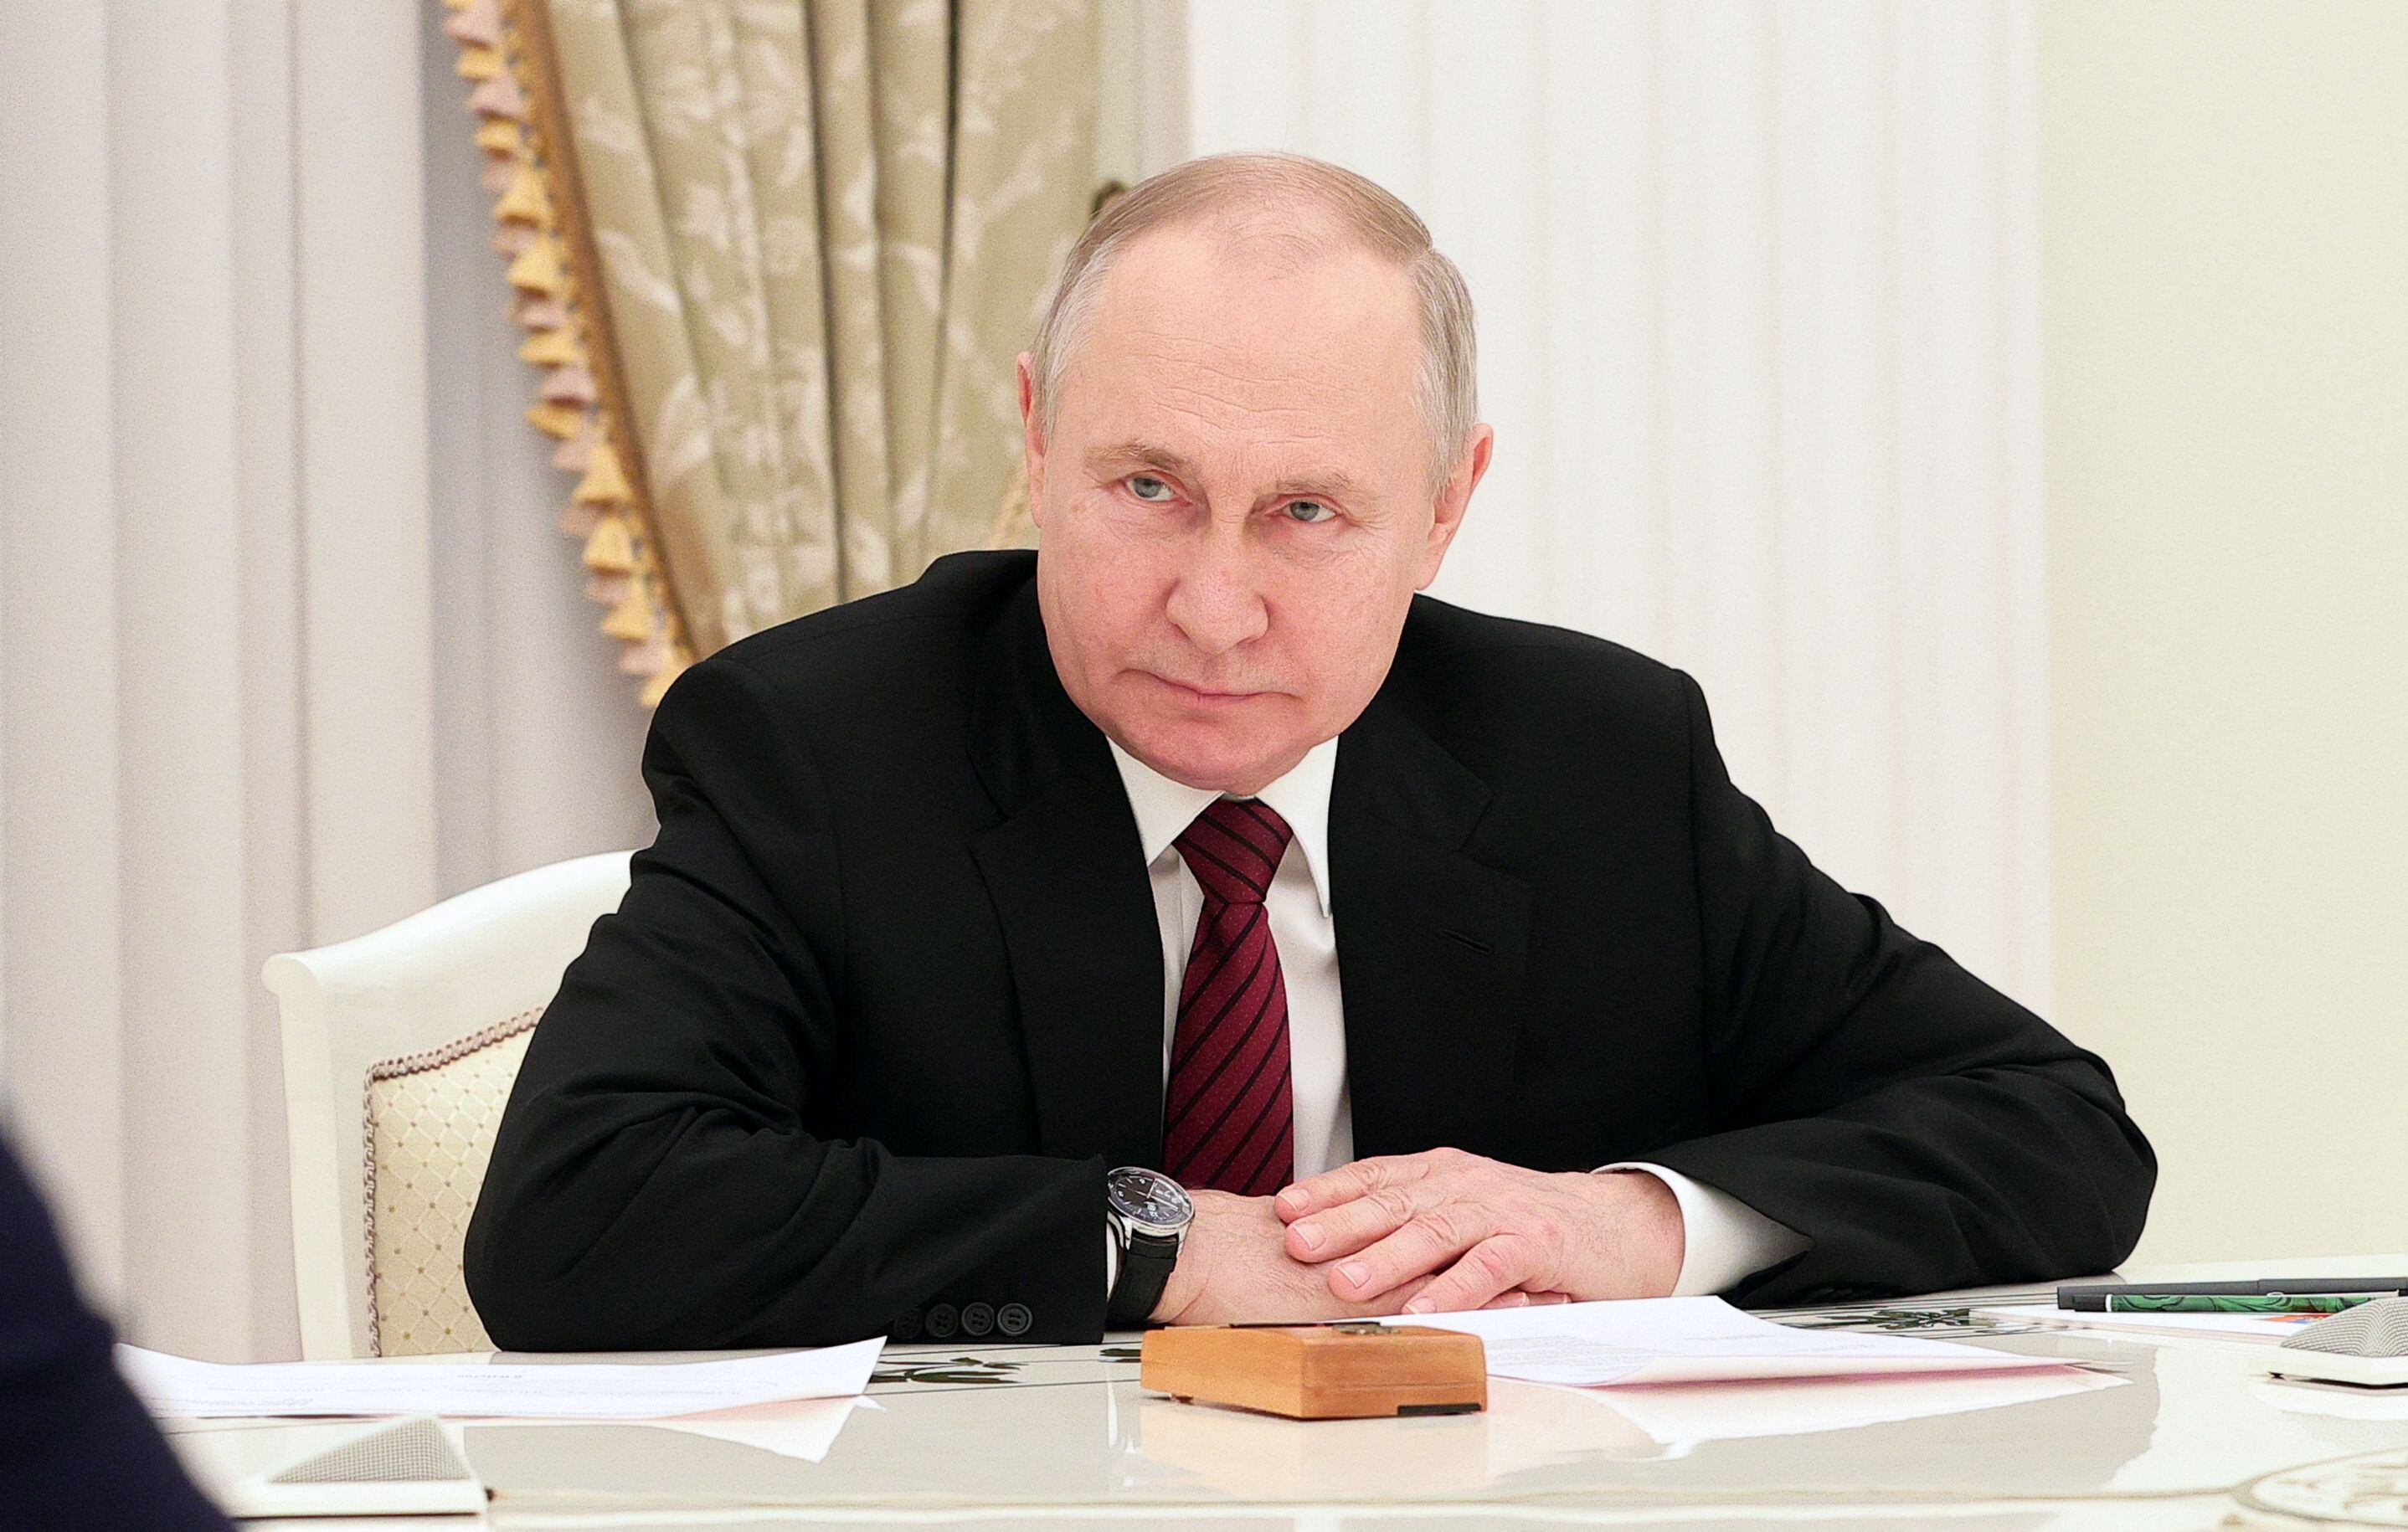 “He tomado la decisión de una operación militar especial”. Con esas palabras, Vladimir Putin lanza el 24 de febrero de 2022 la invasión de la vecina Ucrania.